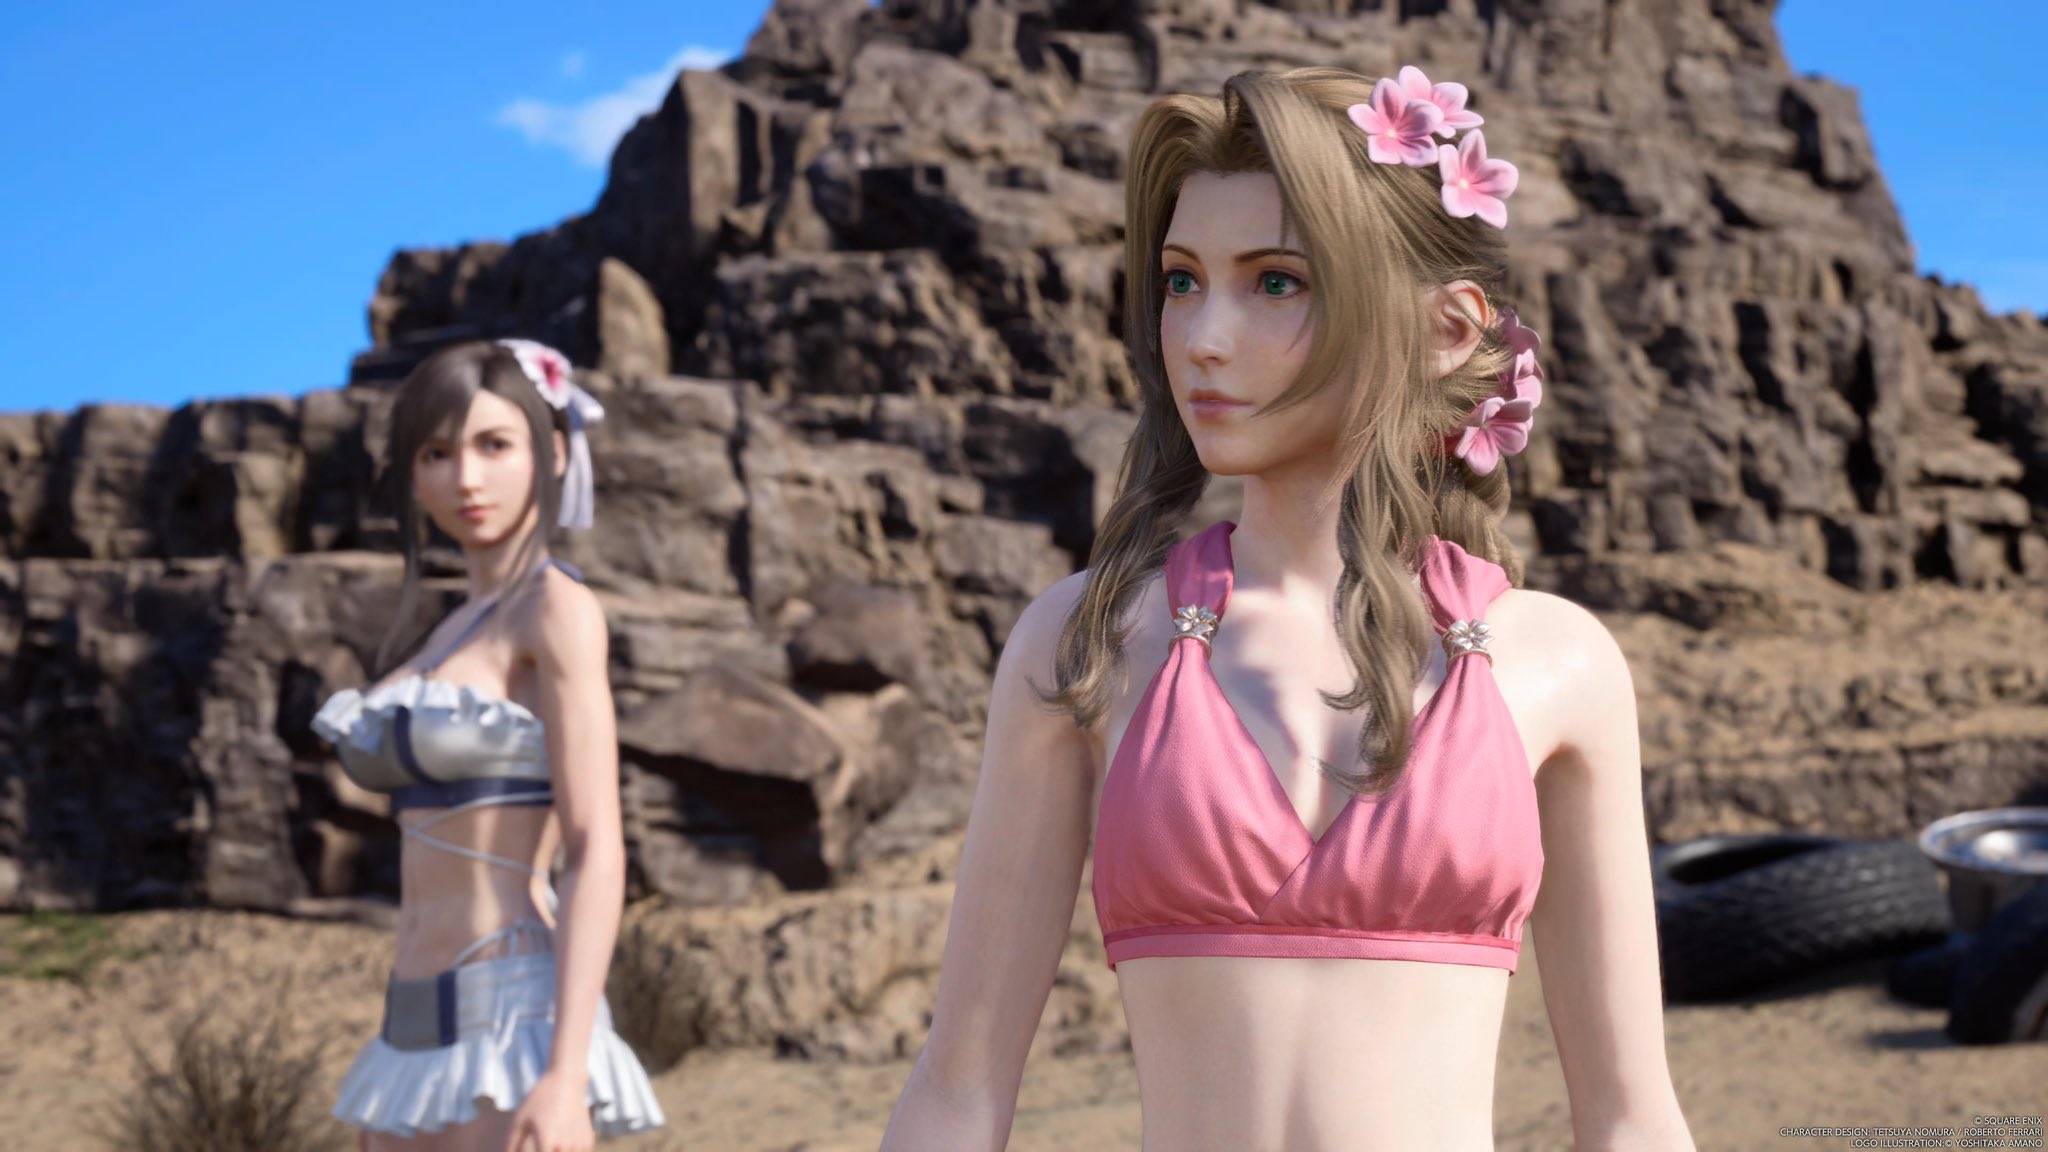 Reseña: Final Fantasy VII Rebirth, la continuación de un viaje fantástico 63